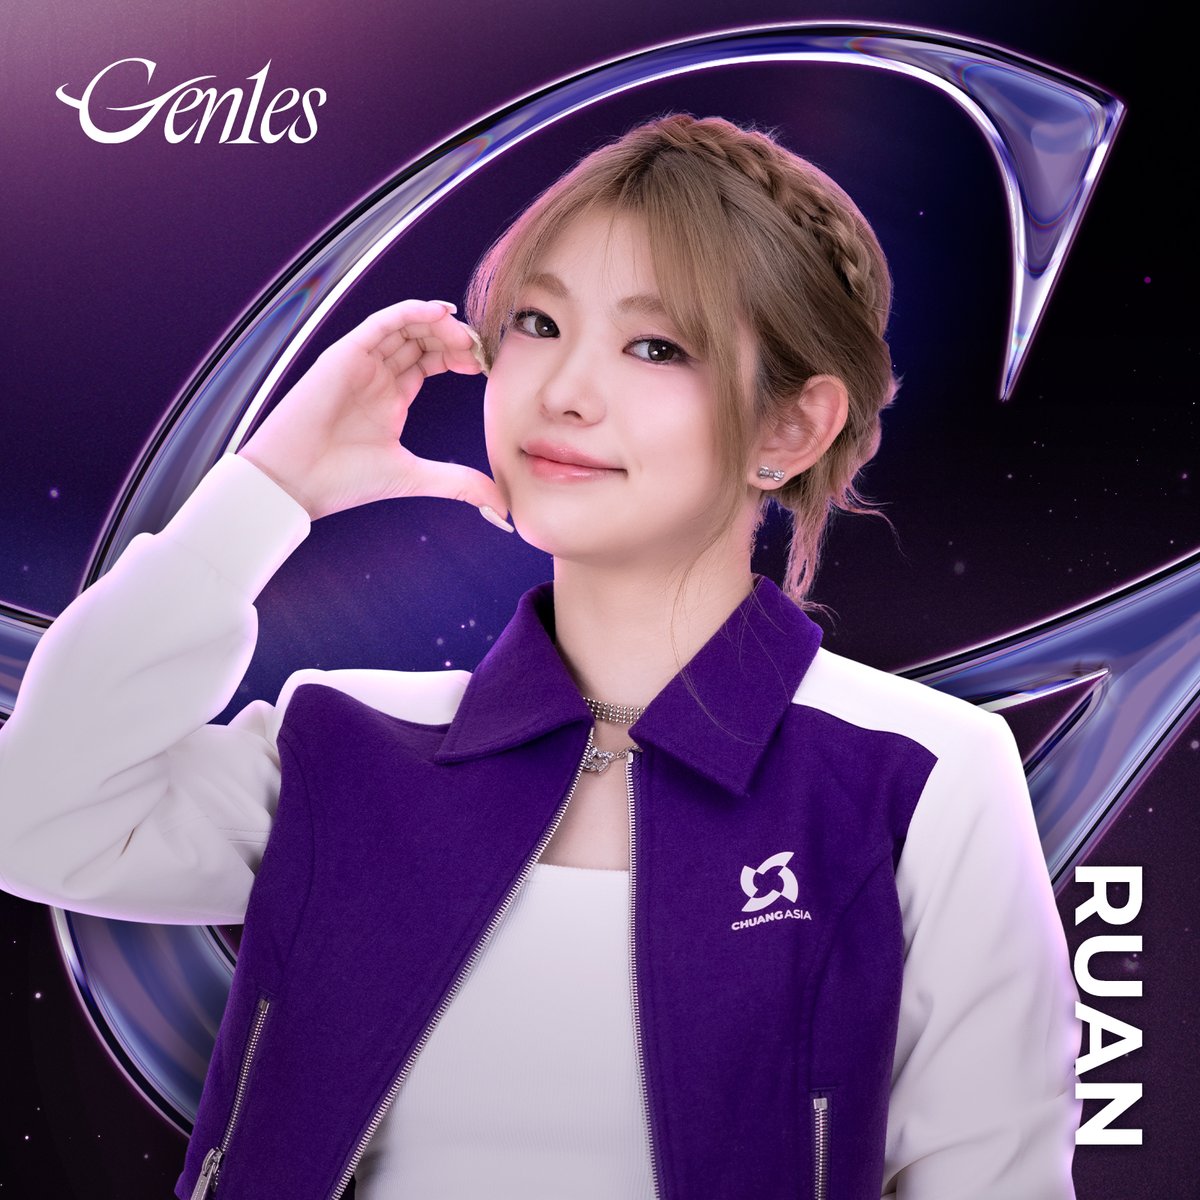 Hello everyone, I'm RUAN from Gen1es.💖 #Gen1es #RUAN